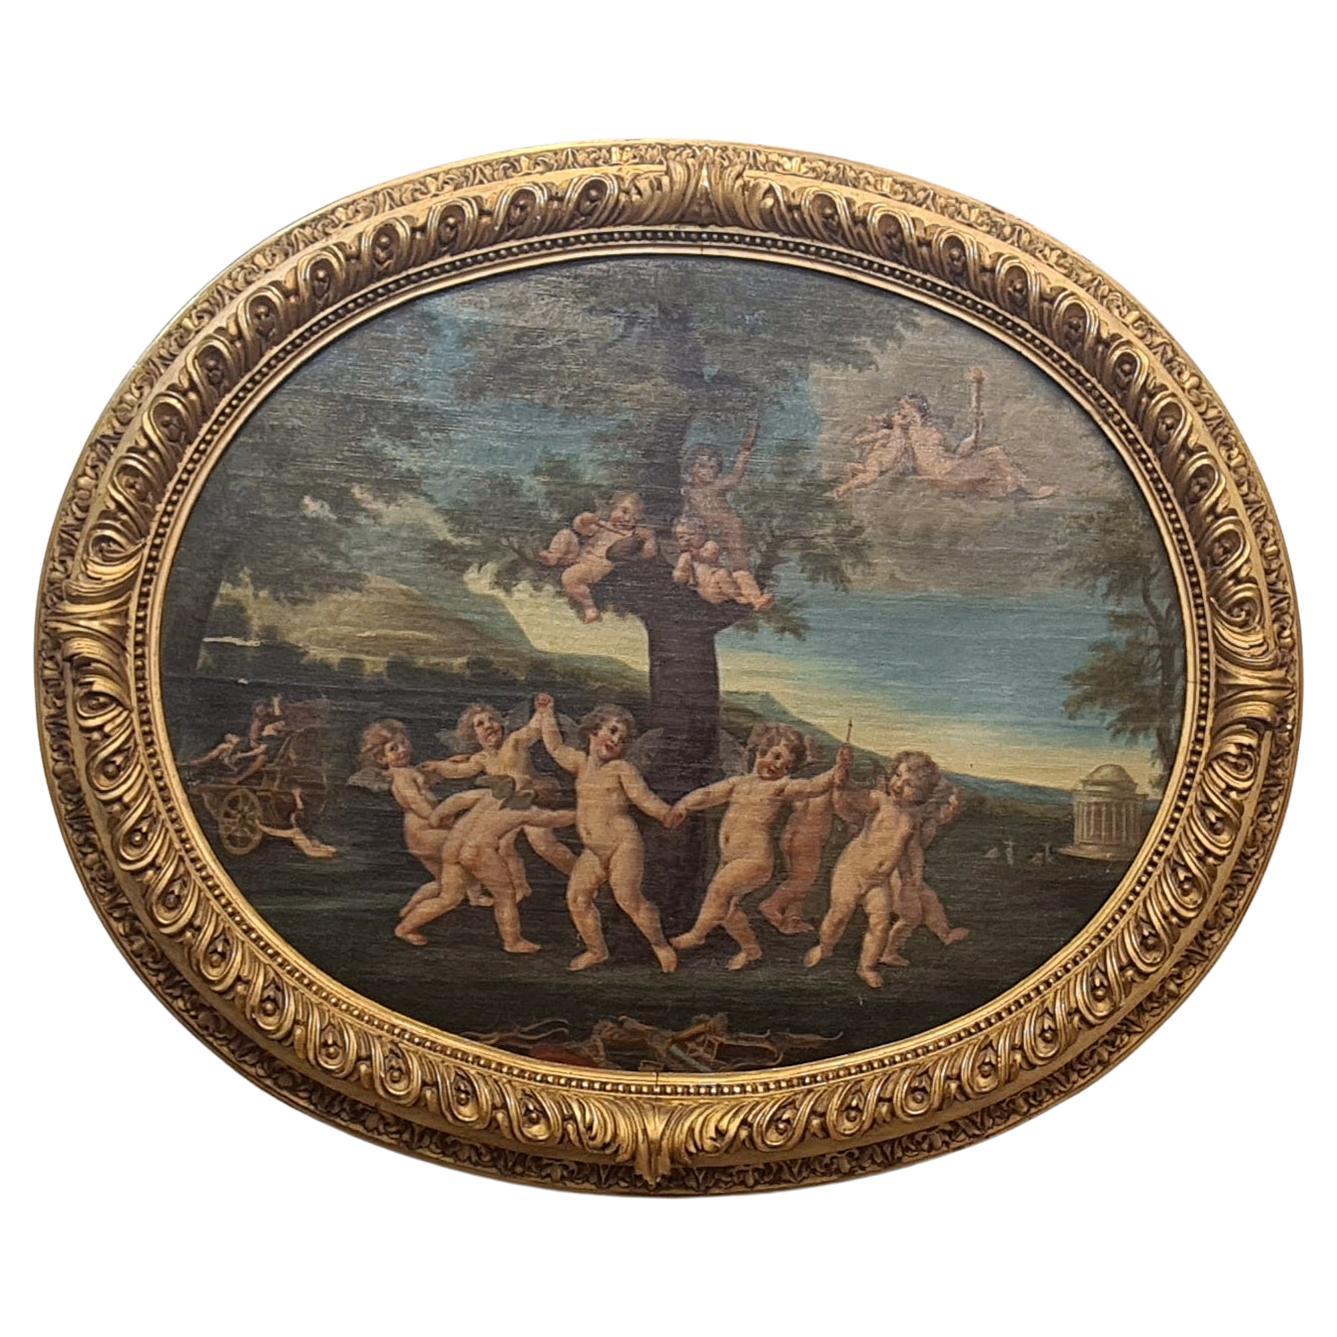 Ölgemälde auf Leinwand, das eine allegorische Szene aus dem 18. Jahrhundert darstellt  19. Jahrhundert